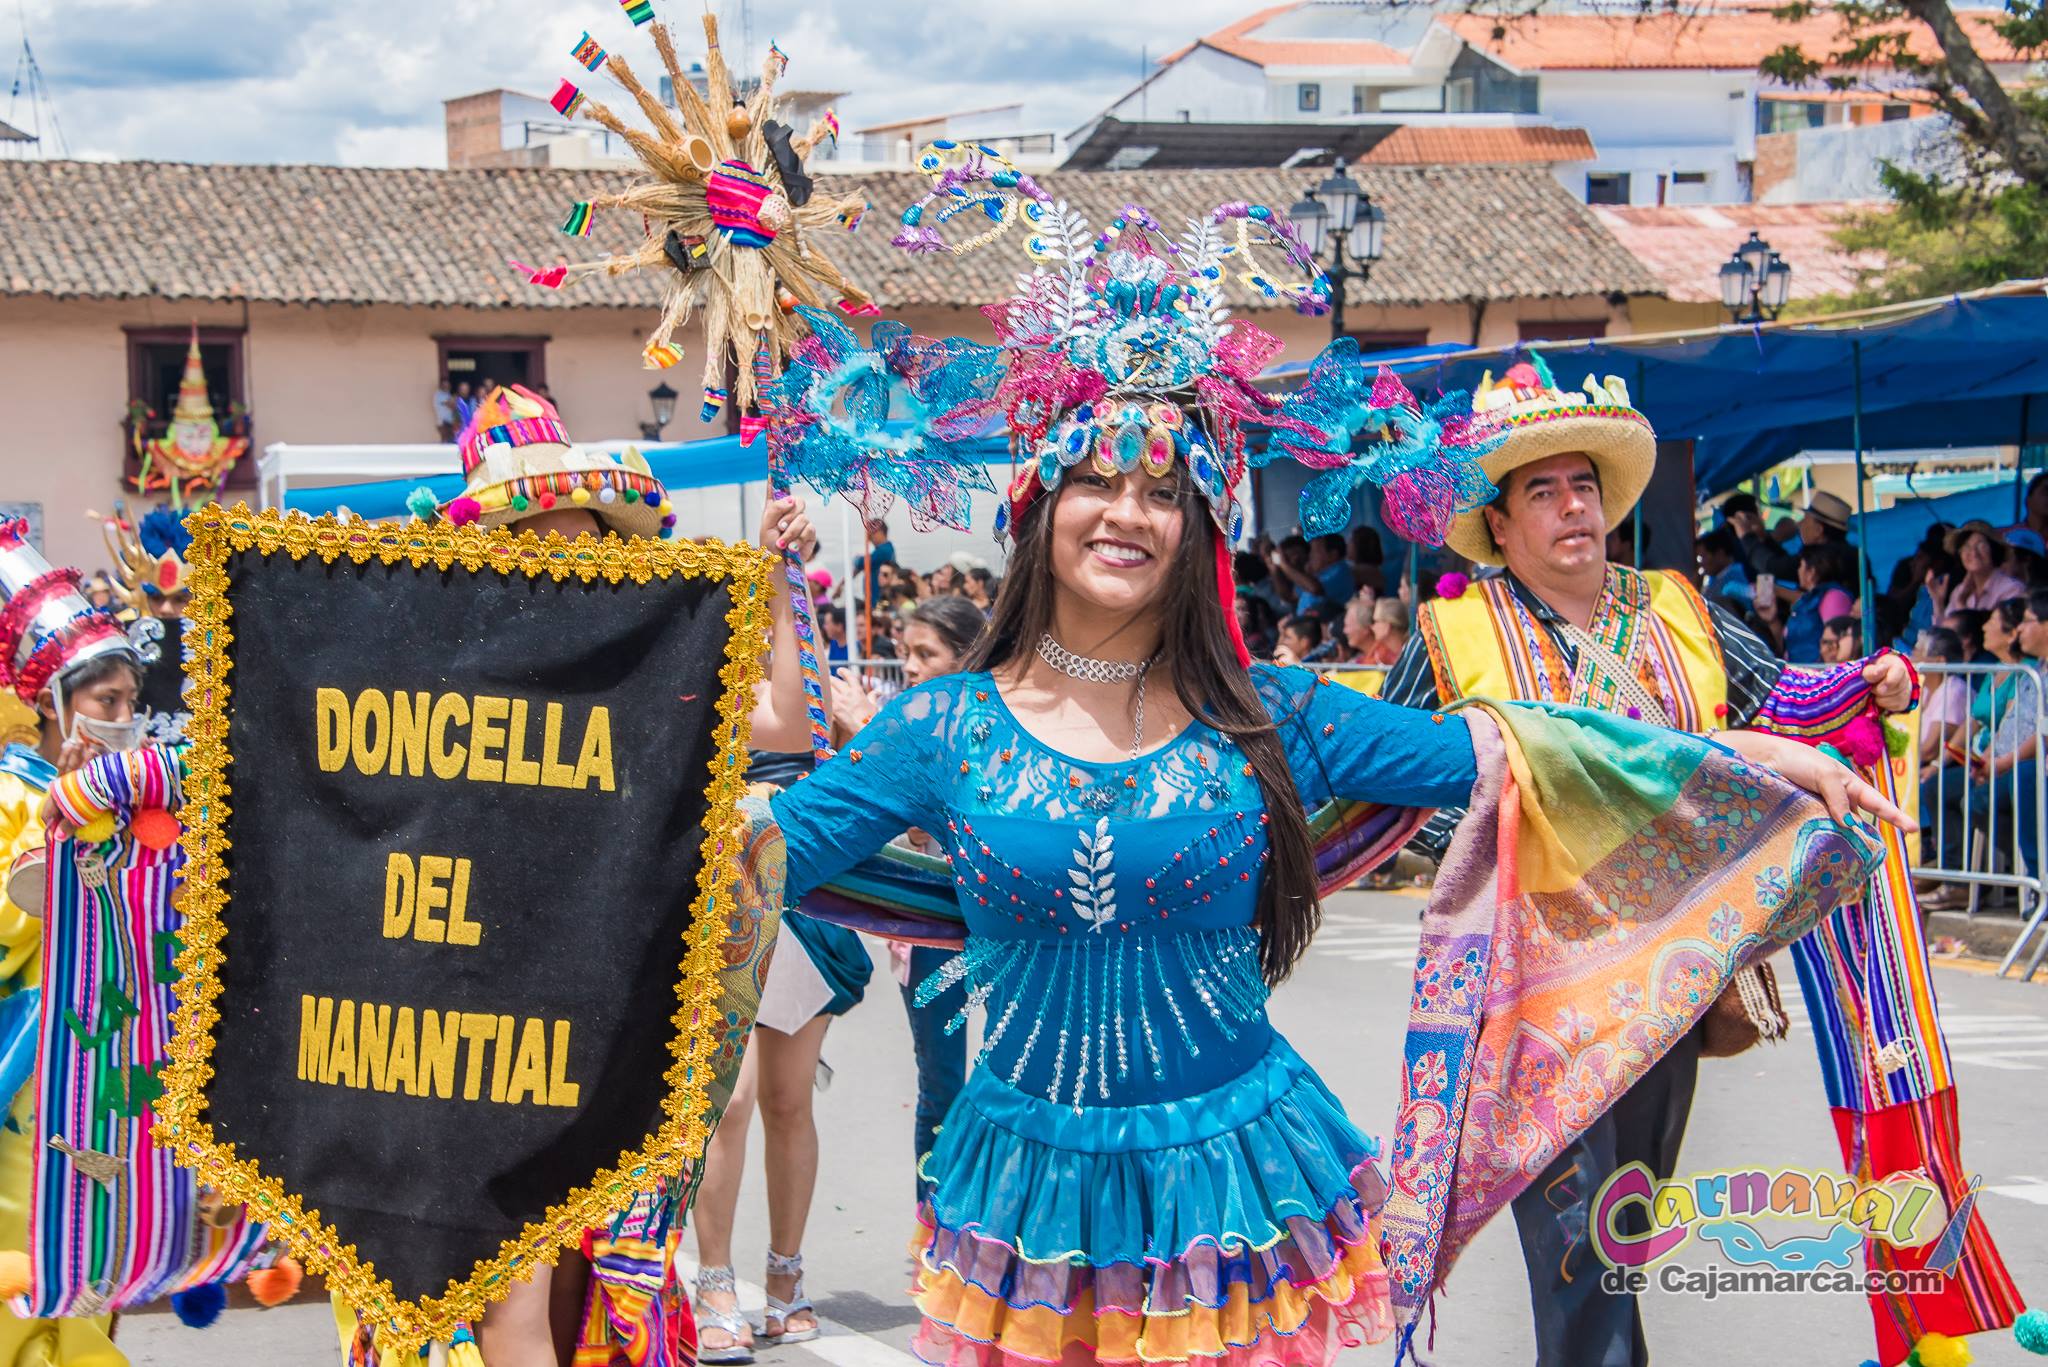 Turistas y nacionales se unen a las celebraciones en febrero. (Carnaval de Cajamarca Facebook)